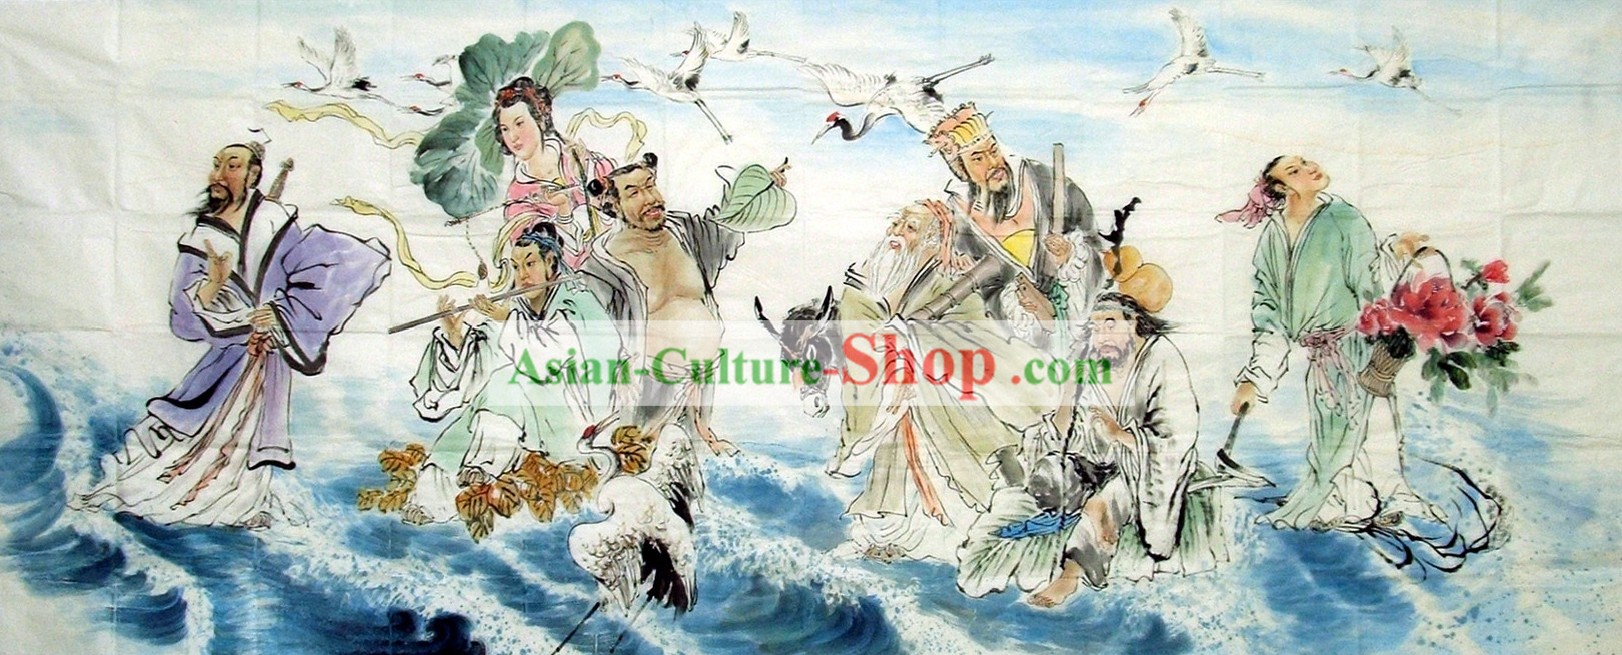 Pintura Tradicional China - Los Ocho Inmortales Cruzando el Mar